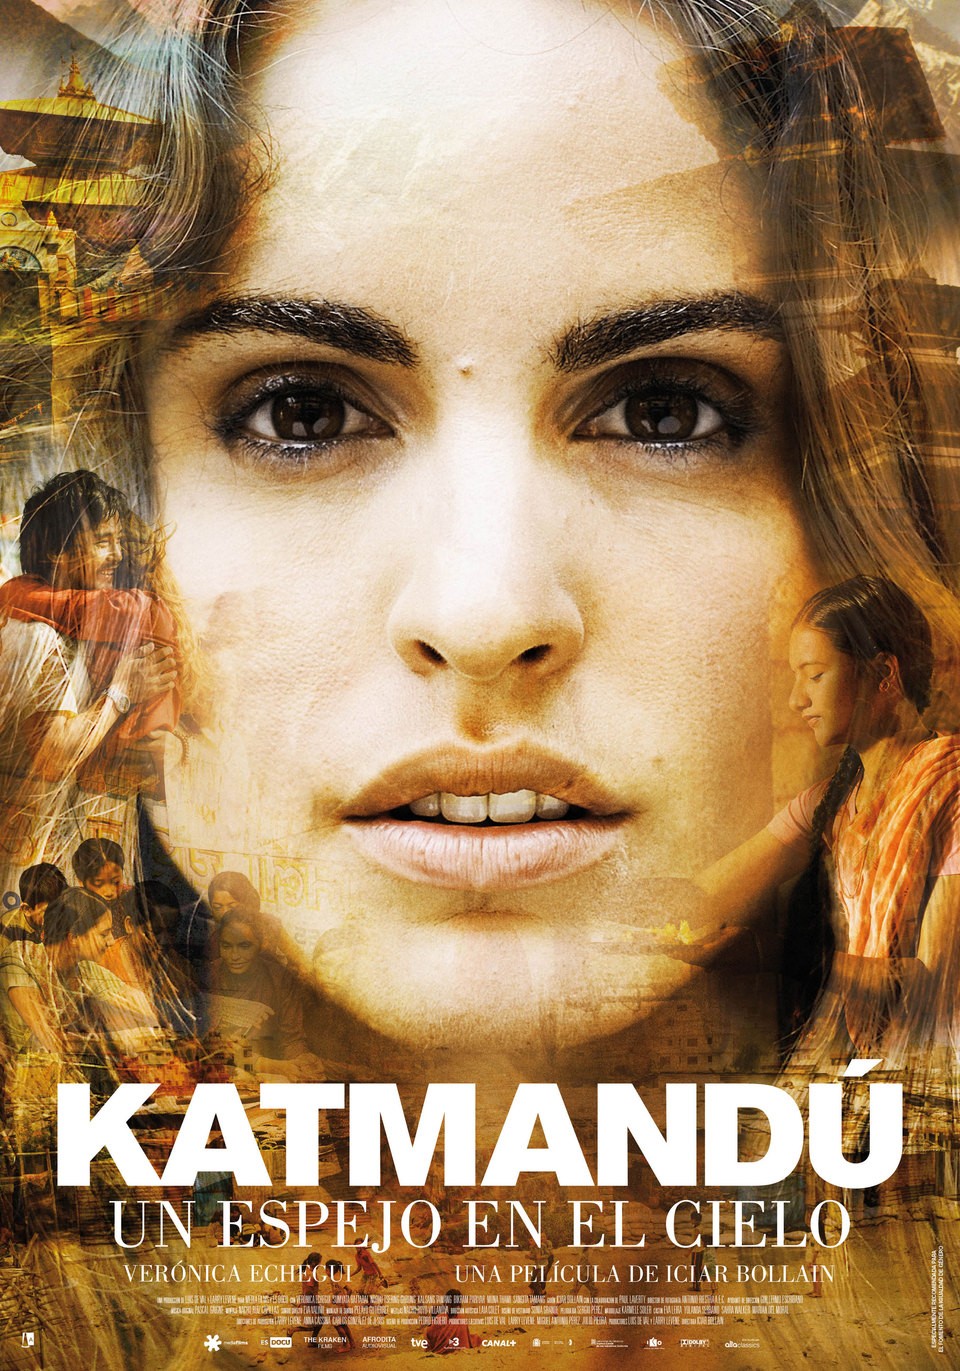 Extra Large Movie Poster Image for Katmandú, un espejo en el cielo 